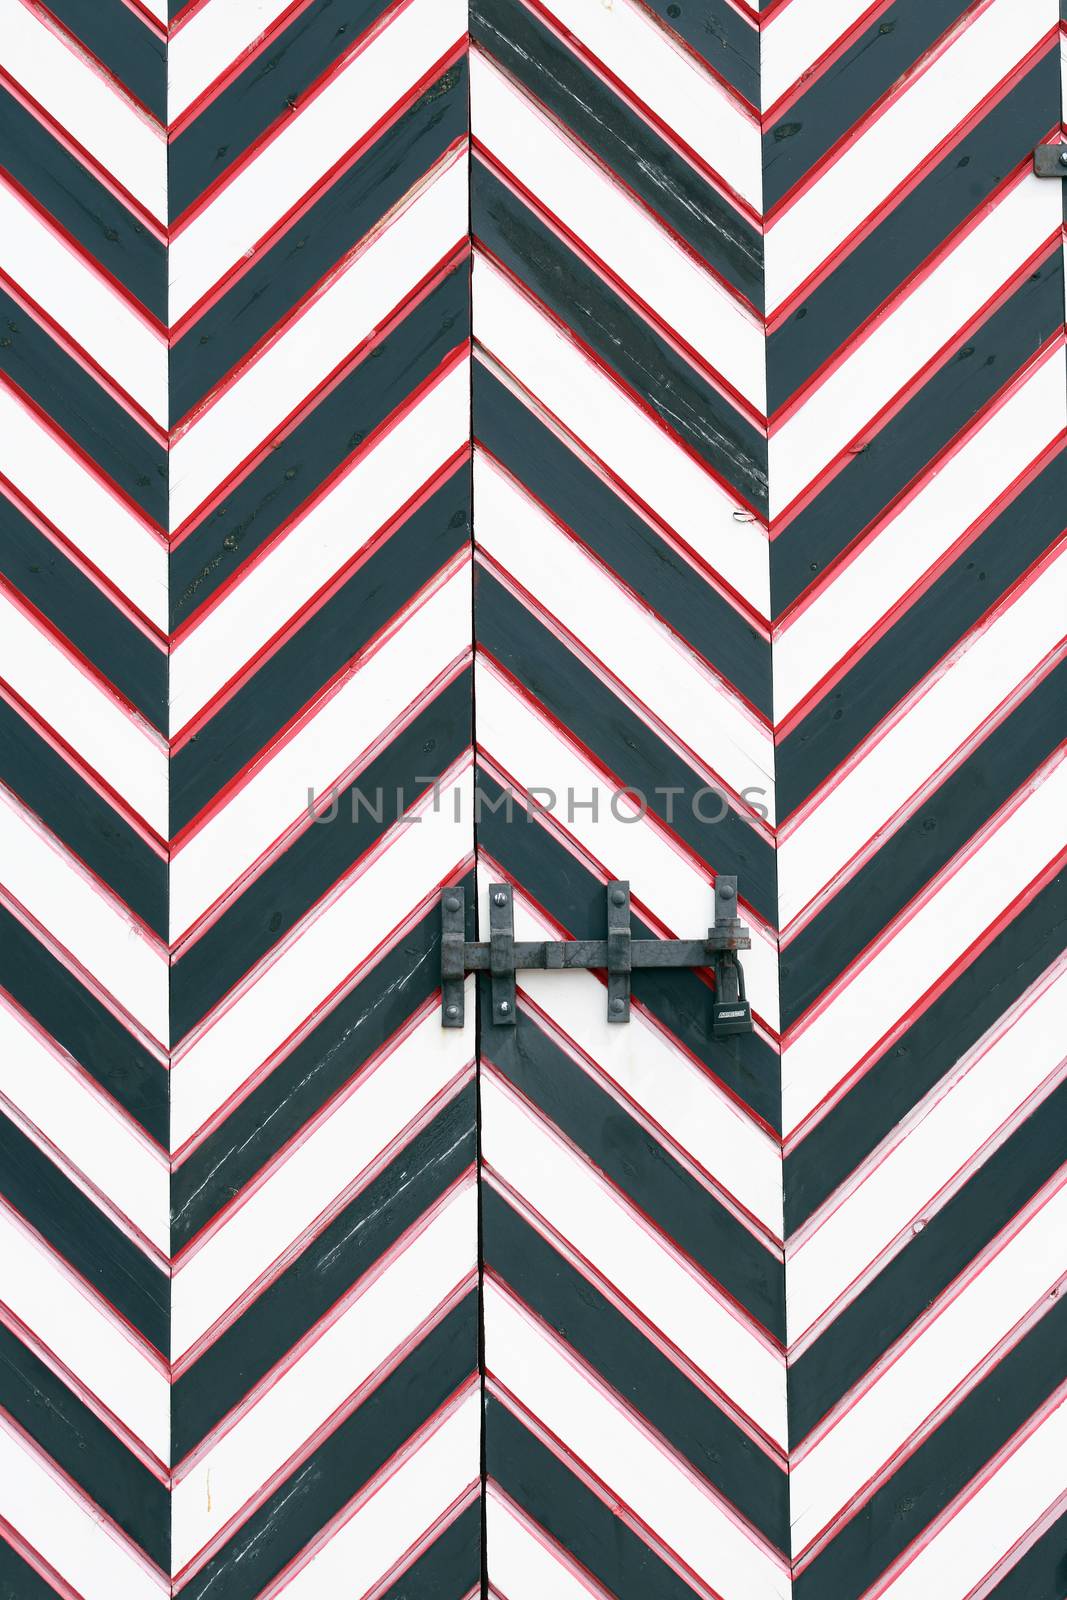 Striped Prison Door by kvkirillov